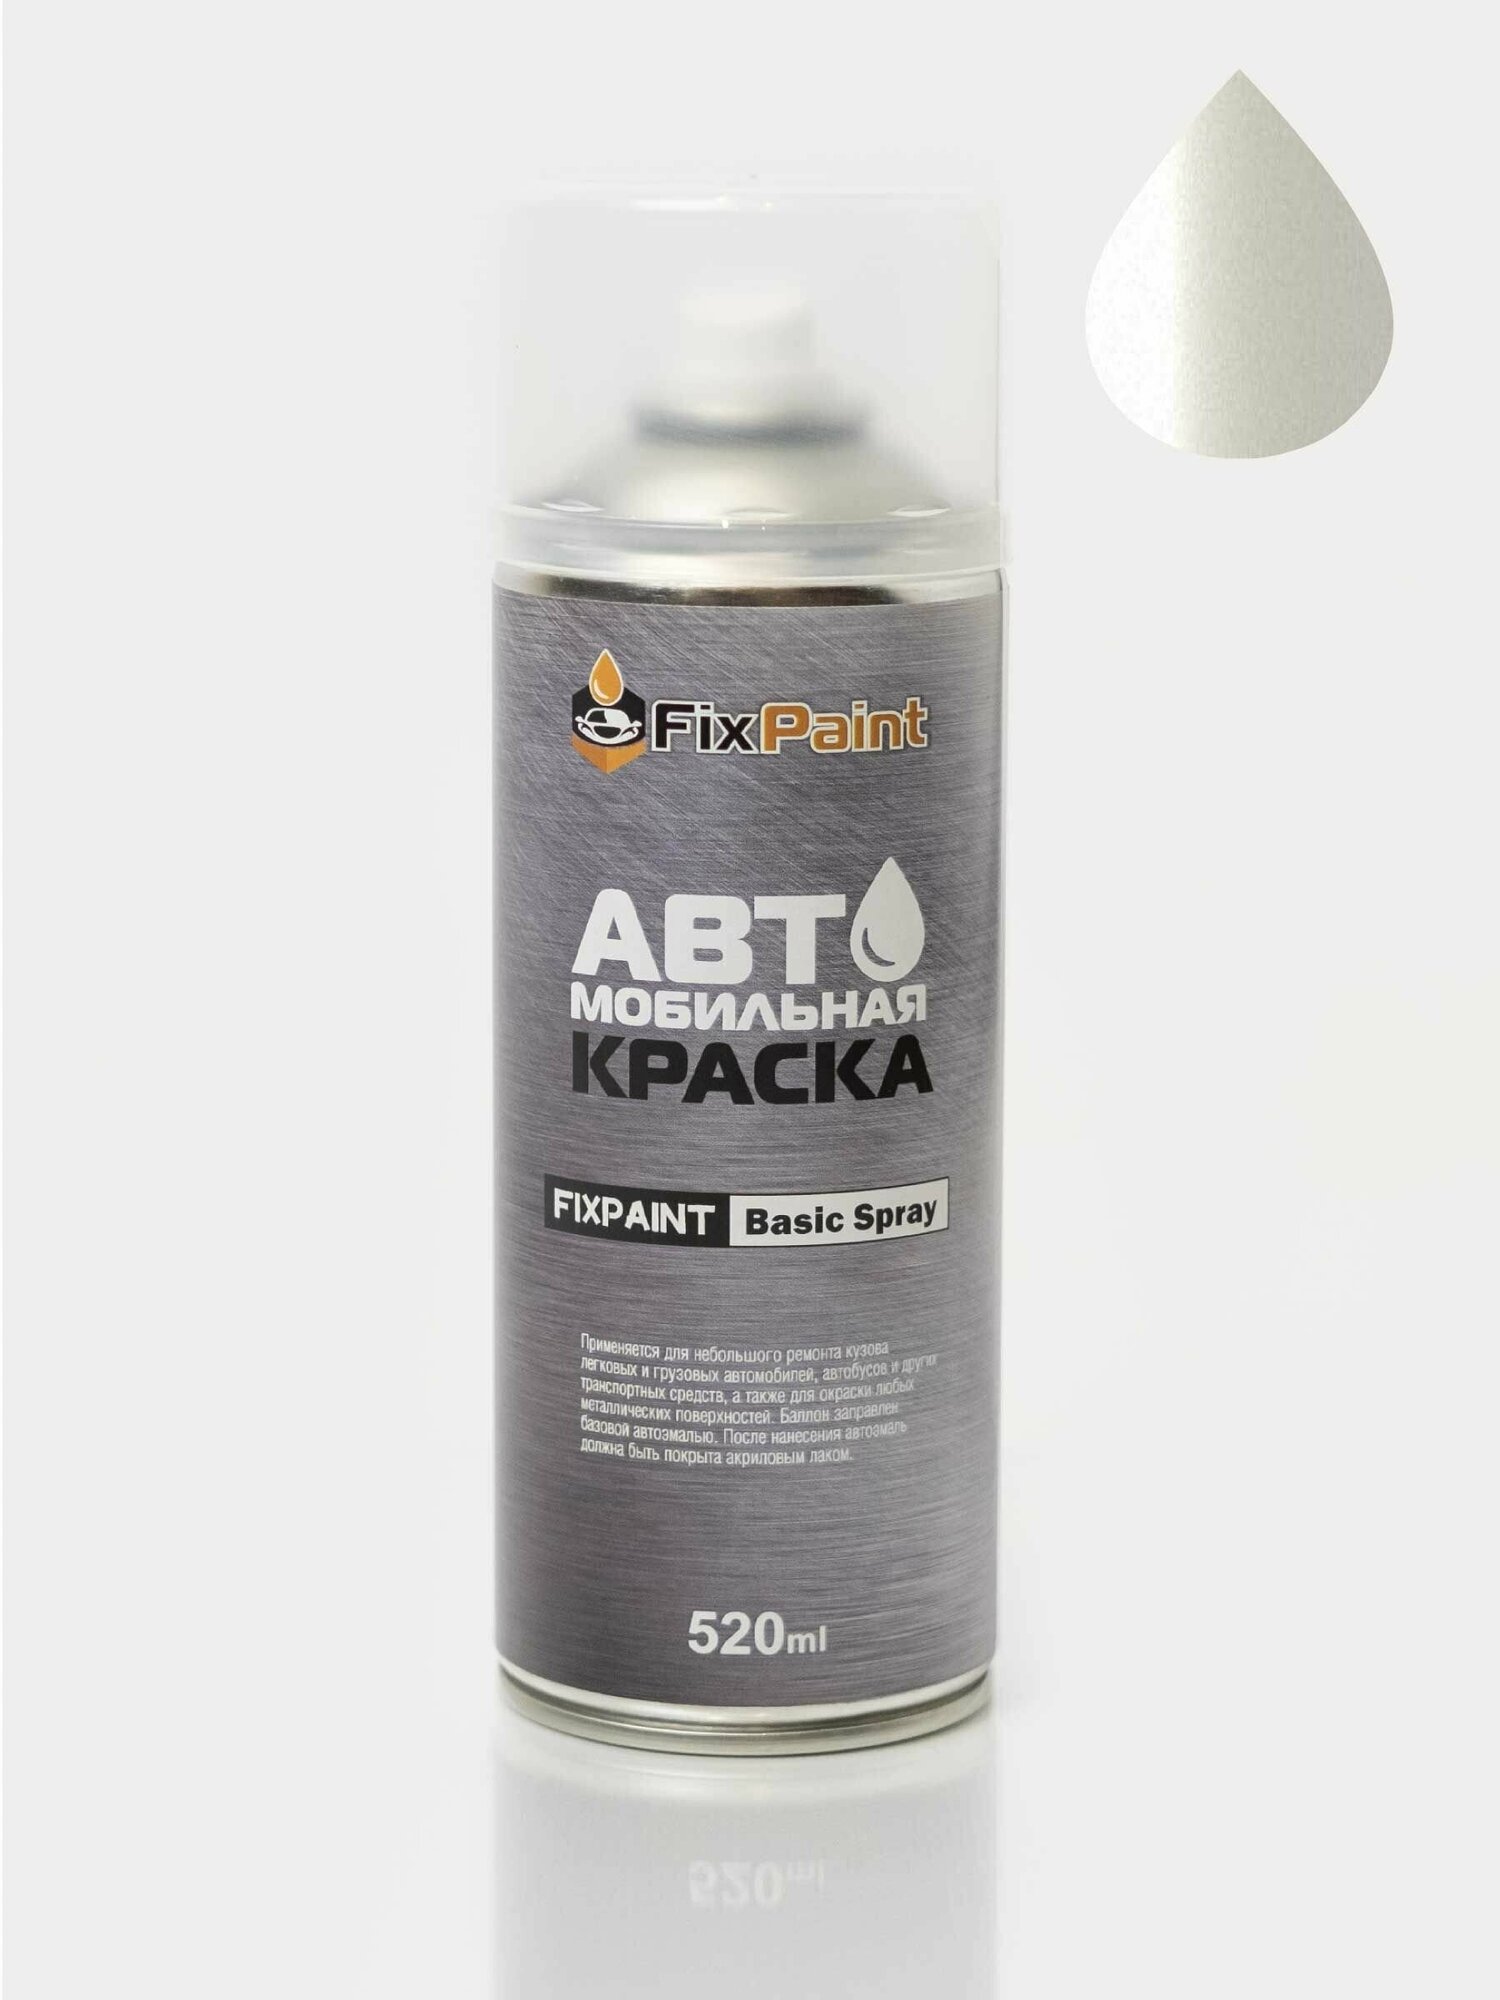 Автомобильная краска FixPaint Spray MERCEDES-BENZ SLS AMG(C197), код цвета 48, название DESIGNO MYSTIC WHITE 2, в аэрозольном баллончике 520 мл